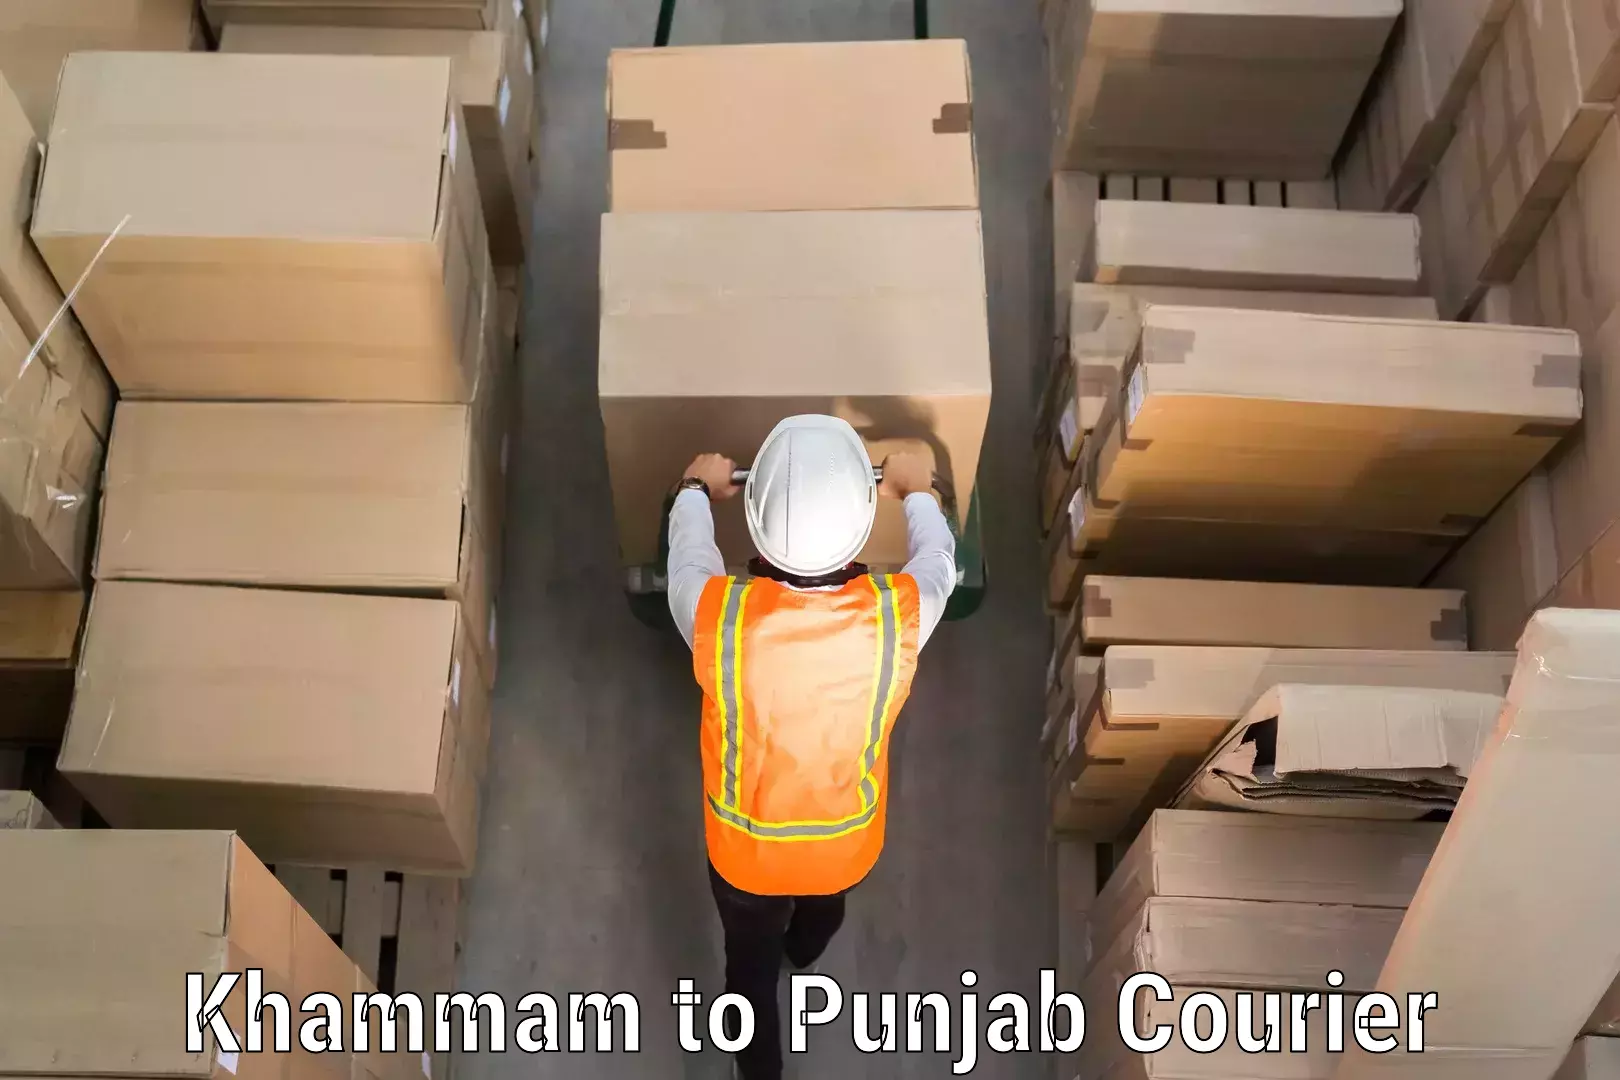 Luggage transport company Khammam to Punjab